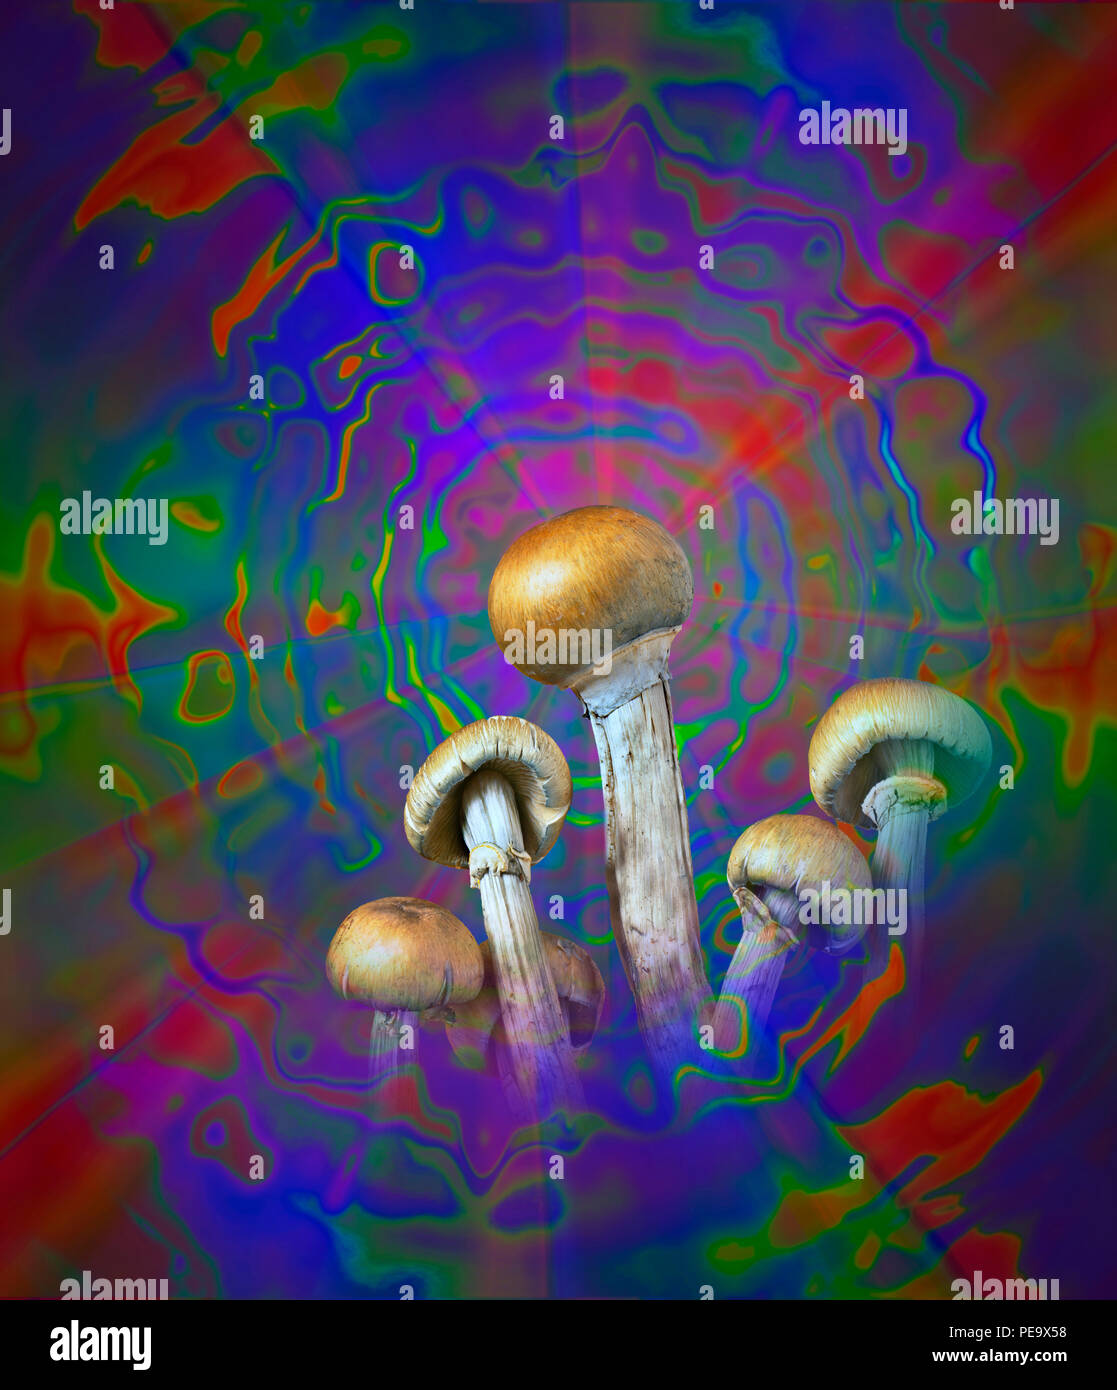 Una fotografia dei funghi magici (Psilocybe cubensis) montaged in una illustrazione di psichedelico. che rappresentano gli effetti allucinogeni di psilocibina Foto Stock